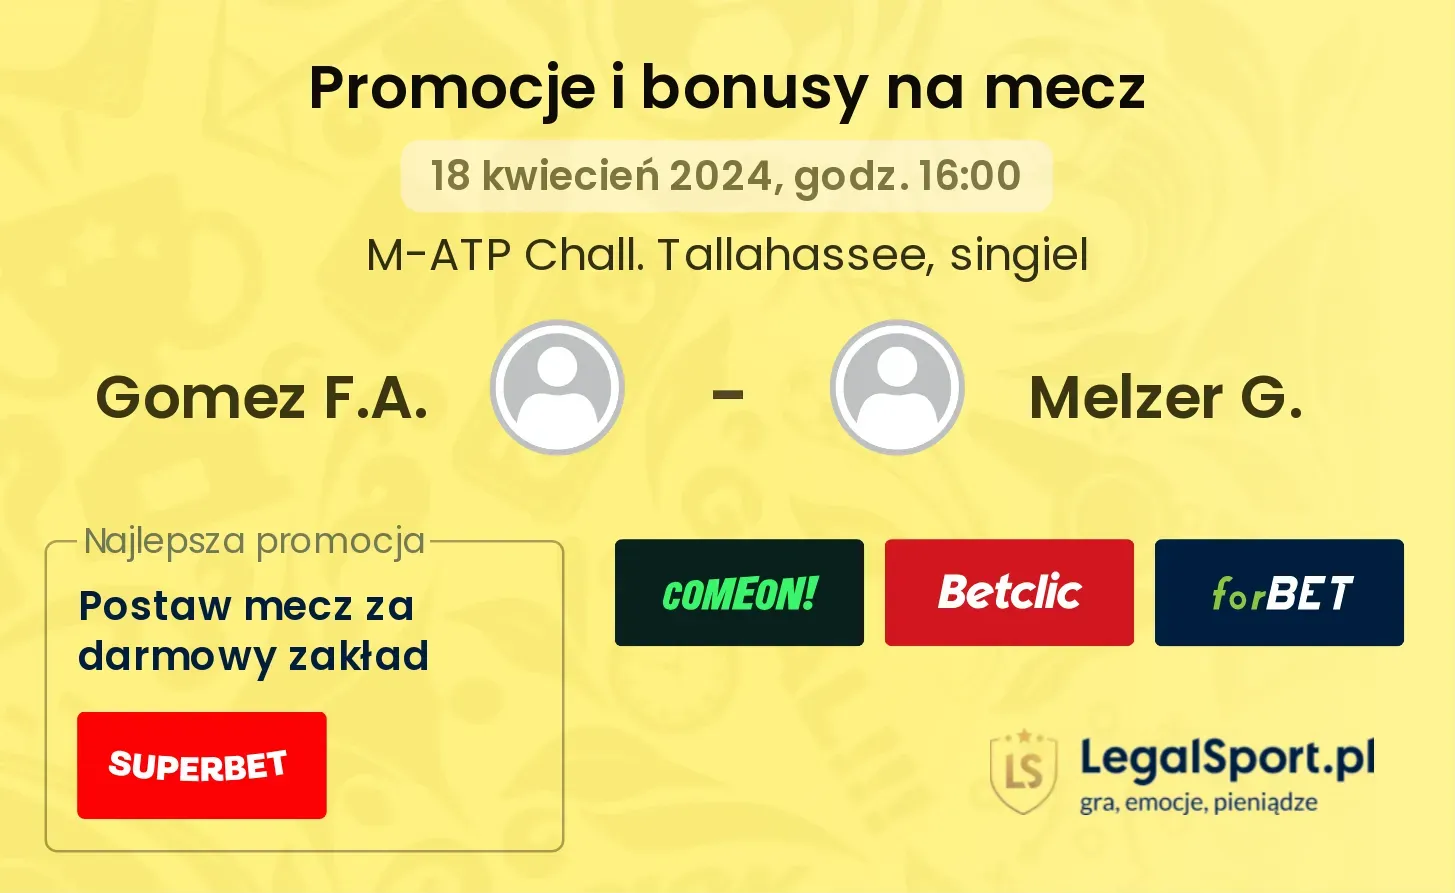 Gomez F.A. - Melzer G. promocje bonusy na mecz